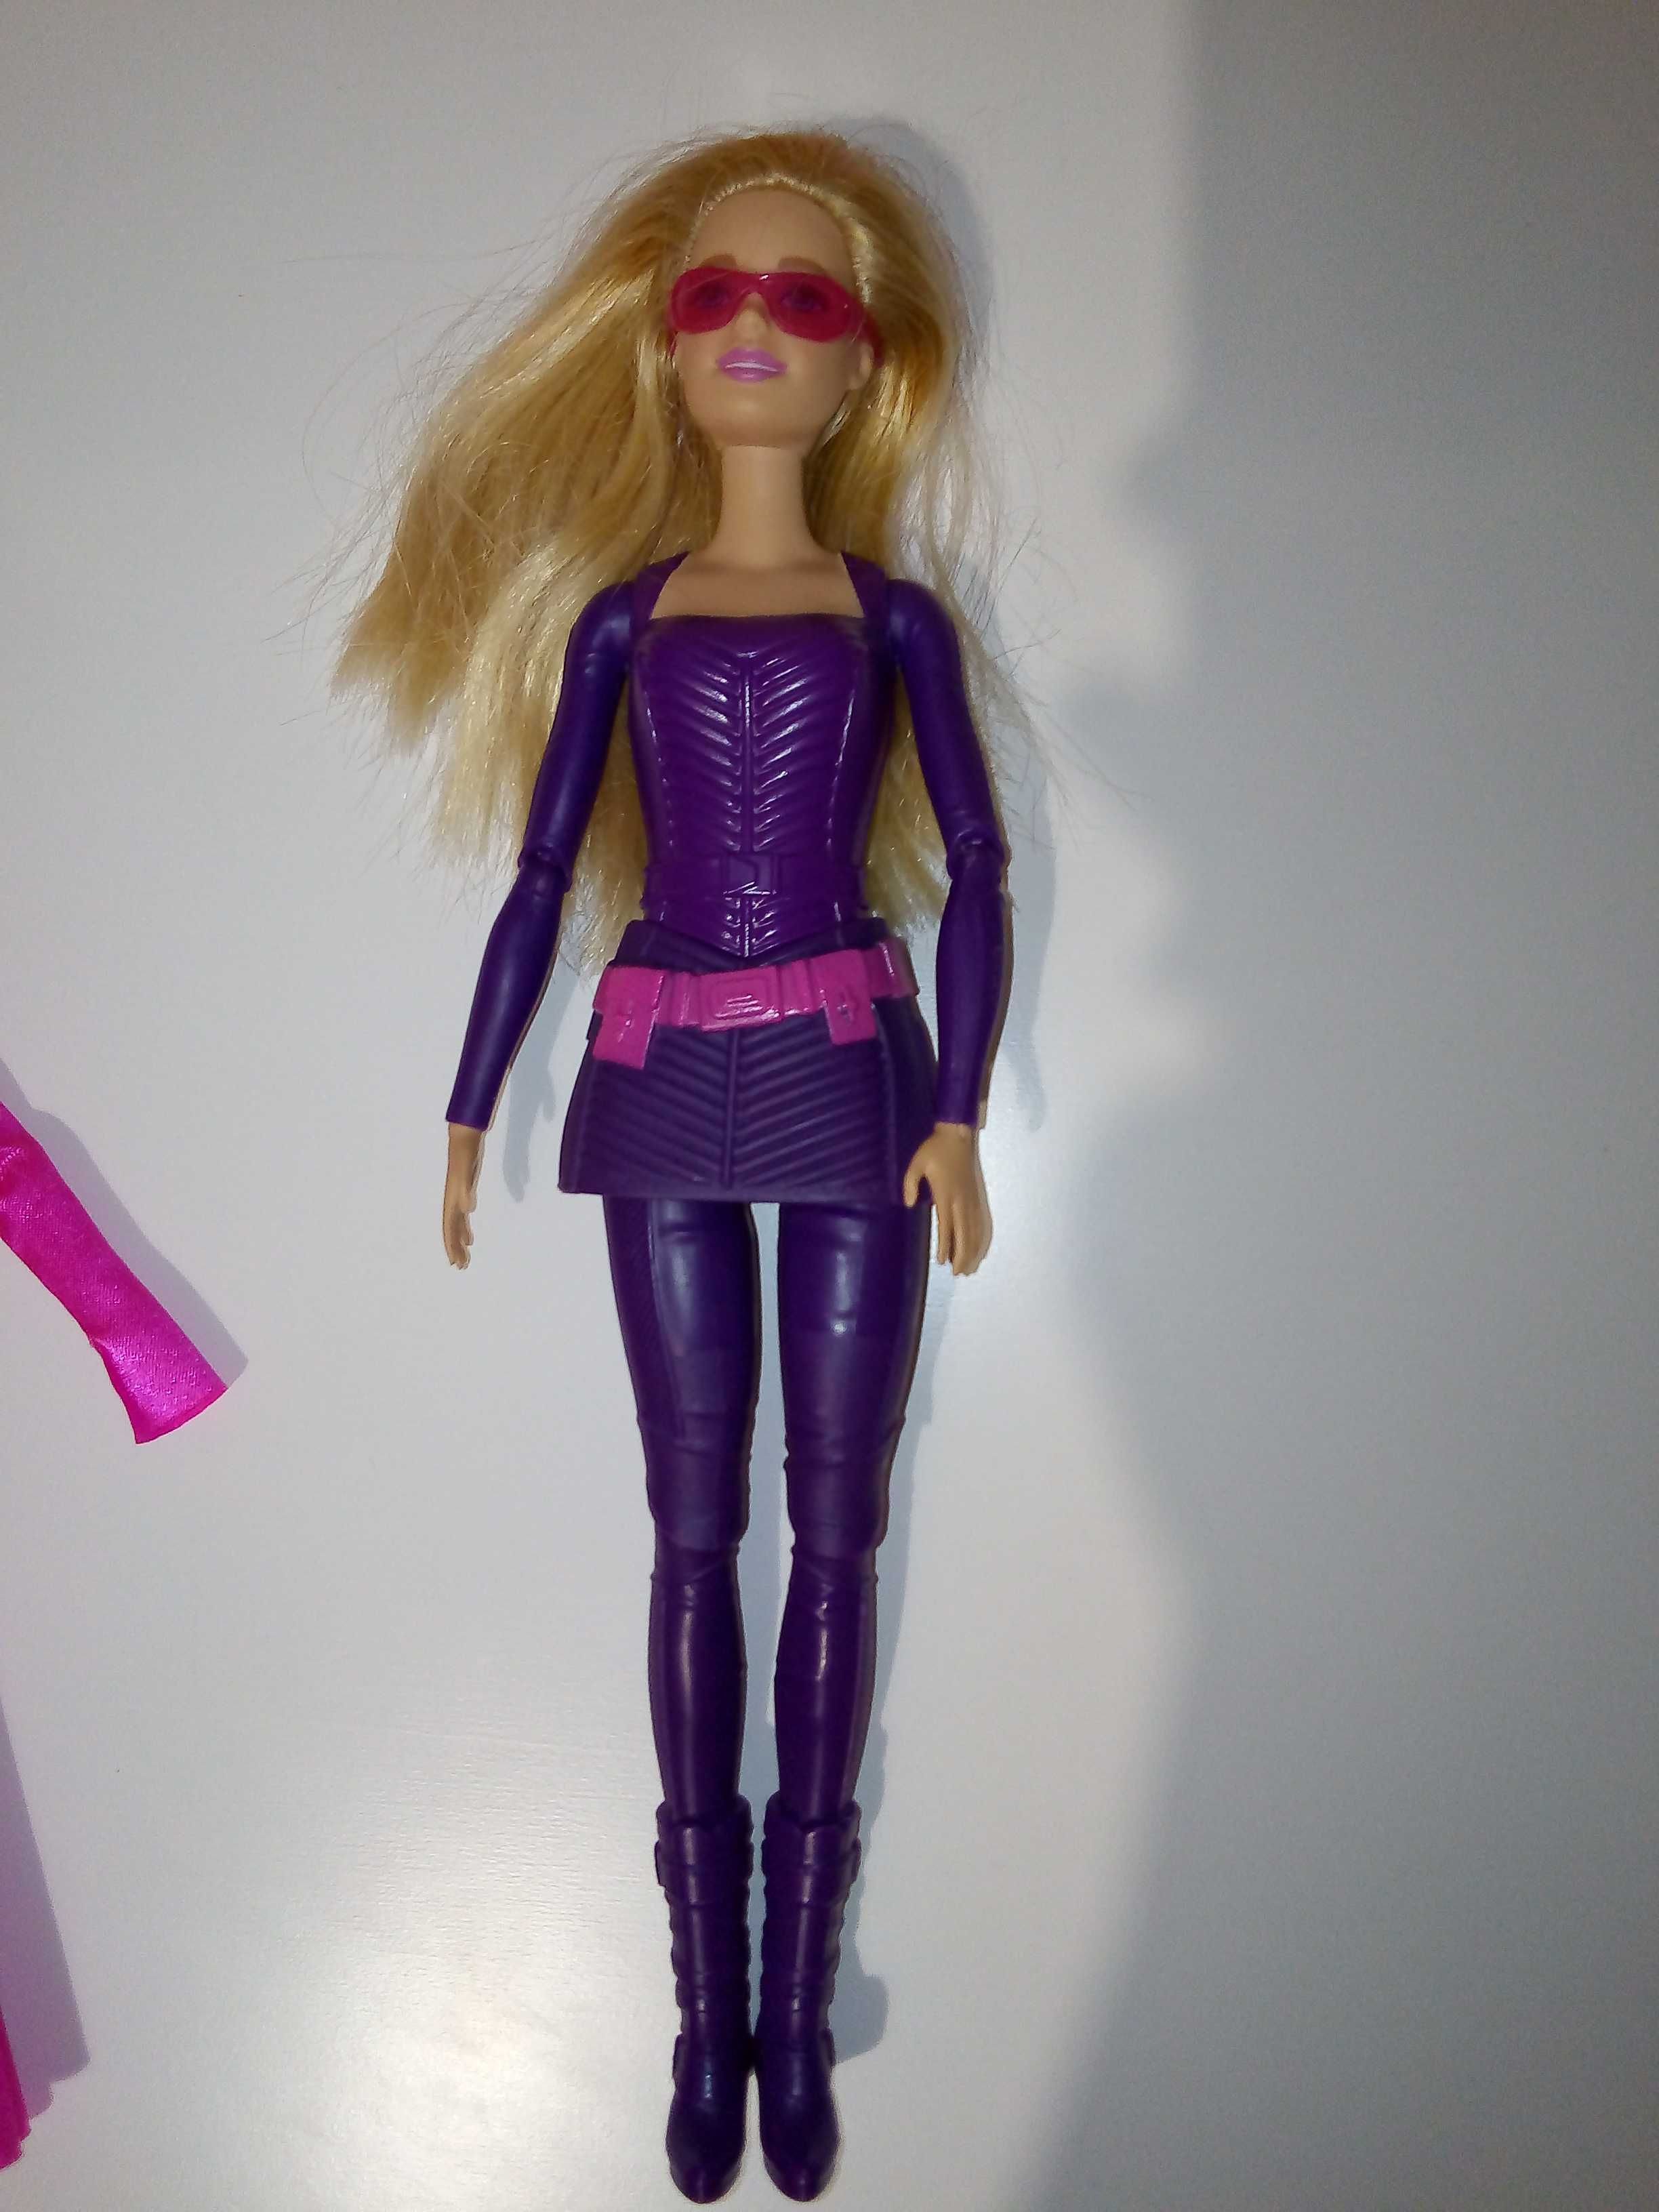 Barbie tajna agentka Spy Squad Patricia motor zestaw fryzjerski